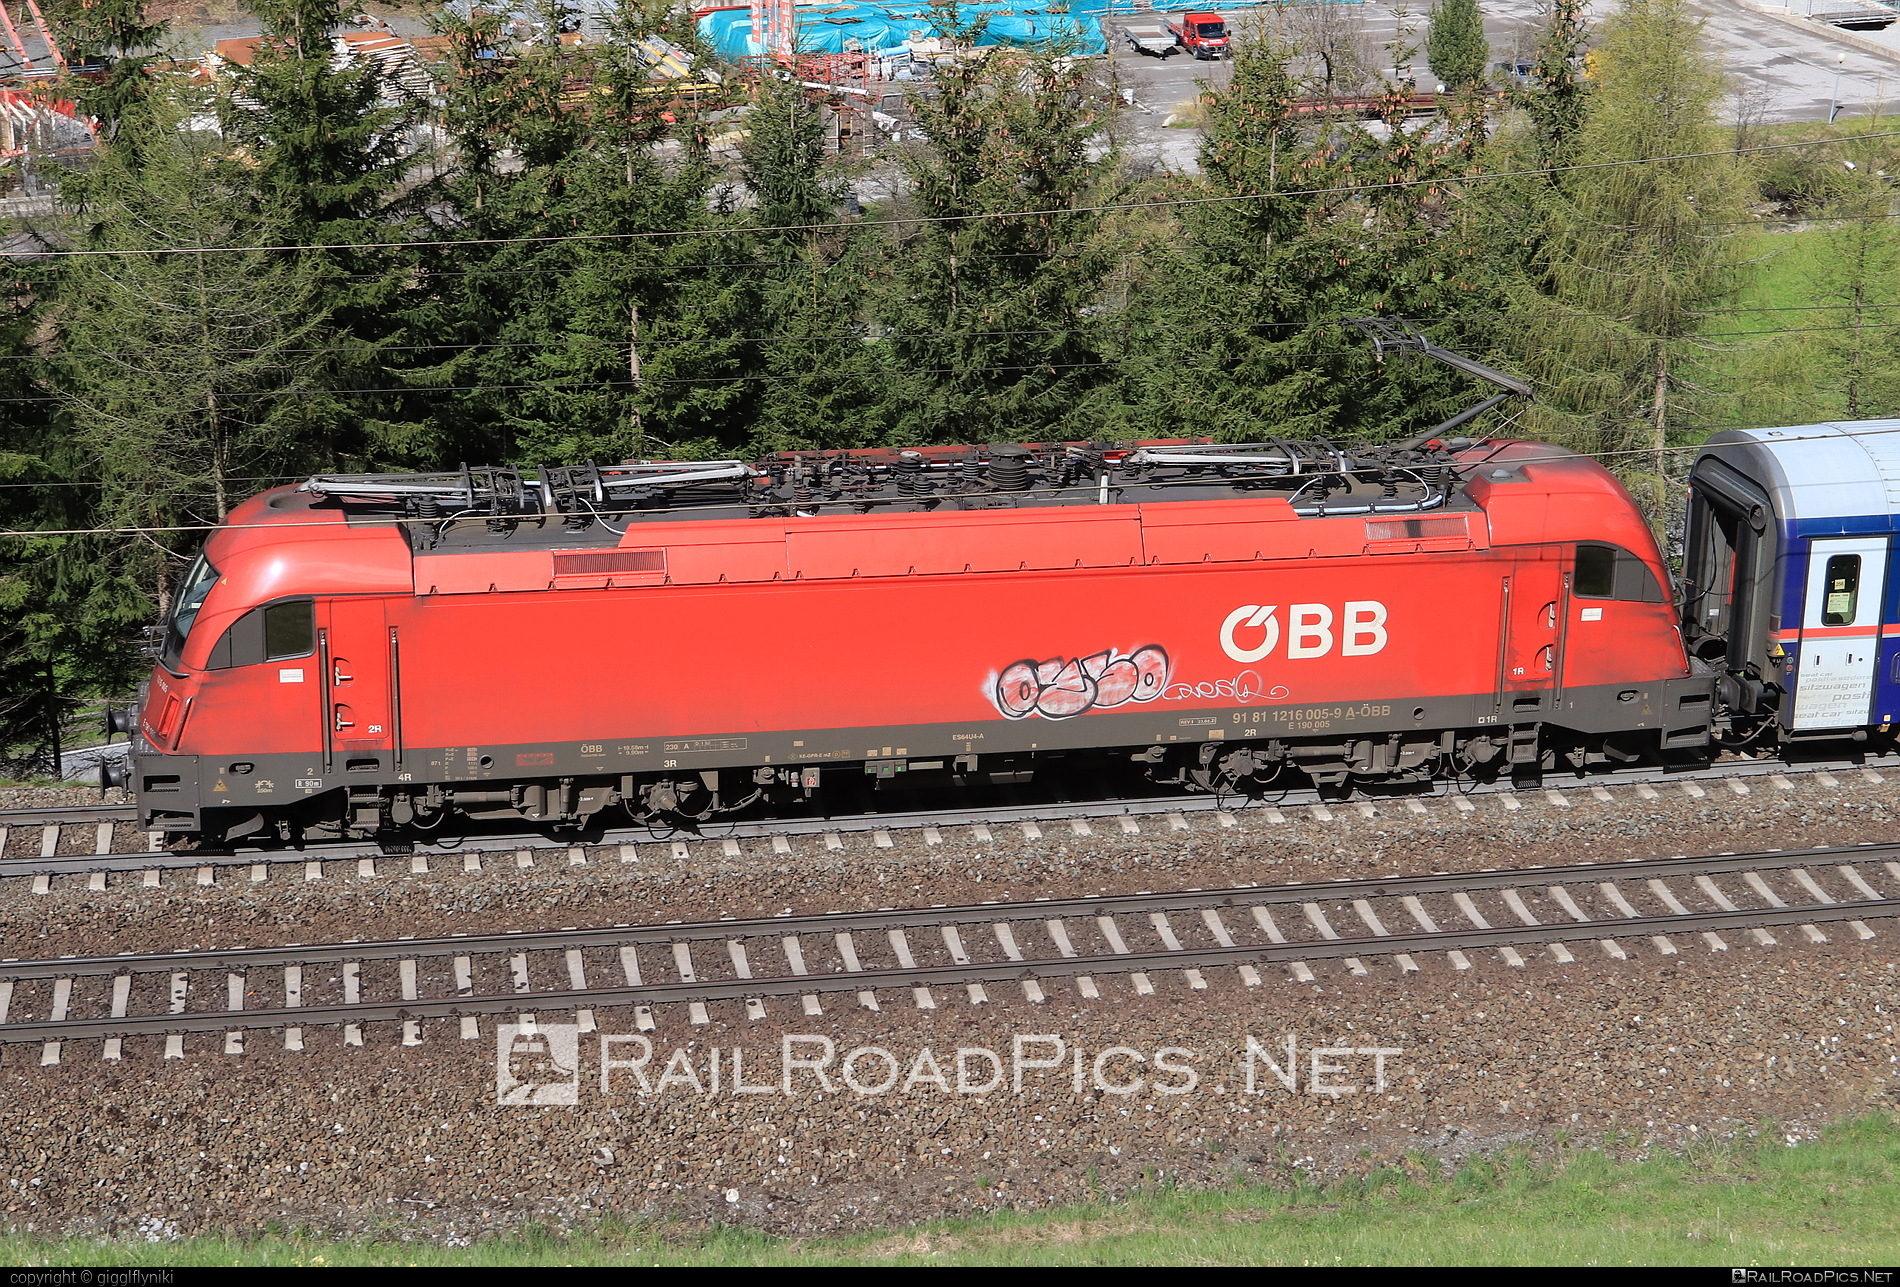 Siemens ES 64 U4 - 1216 005 operated by Österreichische Bundesbahnen #es64 #es64u4 #eurosprinter #graffiti #obb #osterreichischebundesbahnen #siemens #siemensEs64 #siemensEs64u4 #siemenstaurus #taurus #tauruslocomotive